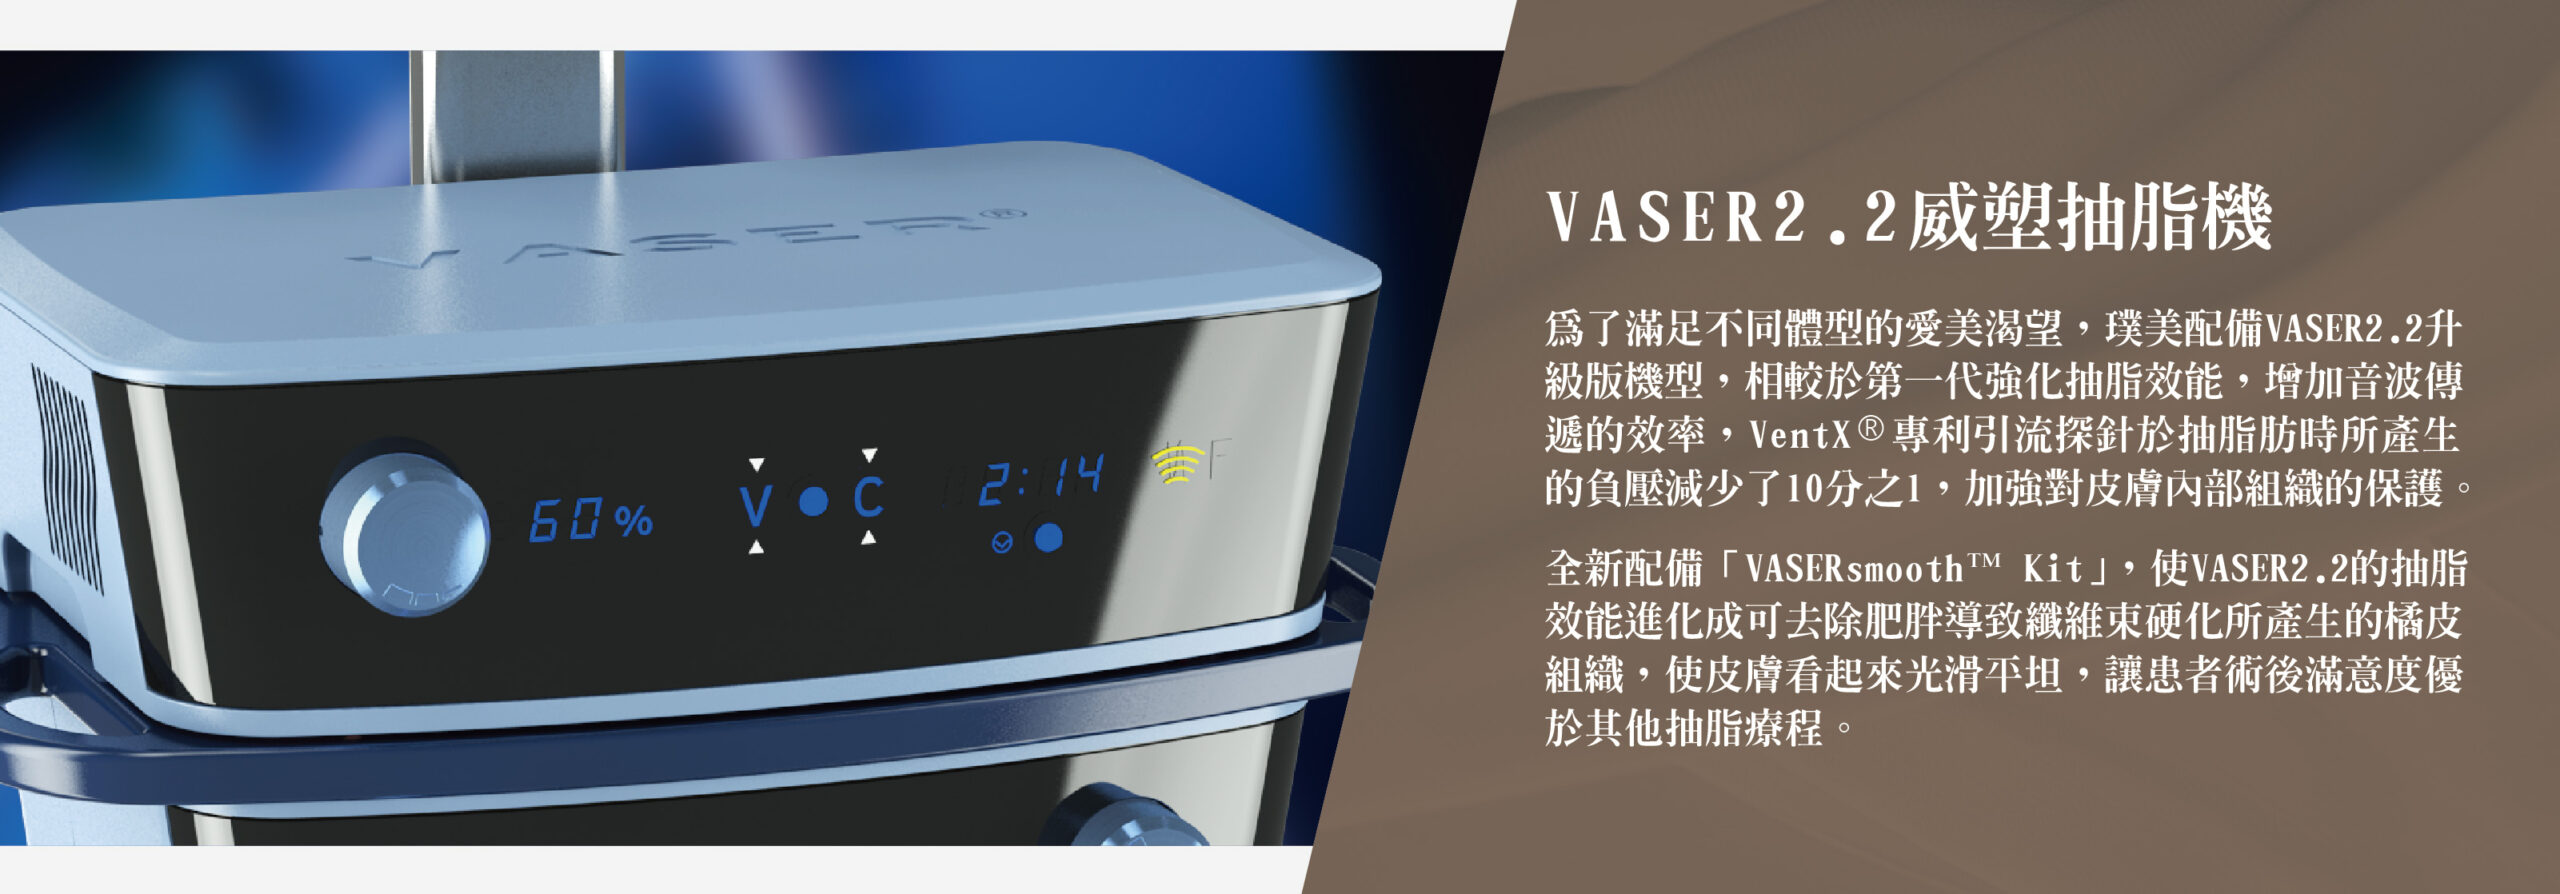 VASER2.2威塑抽脂機